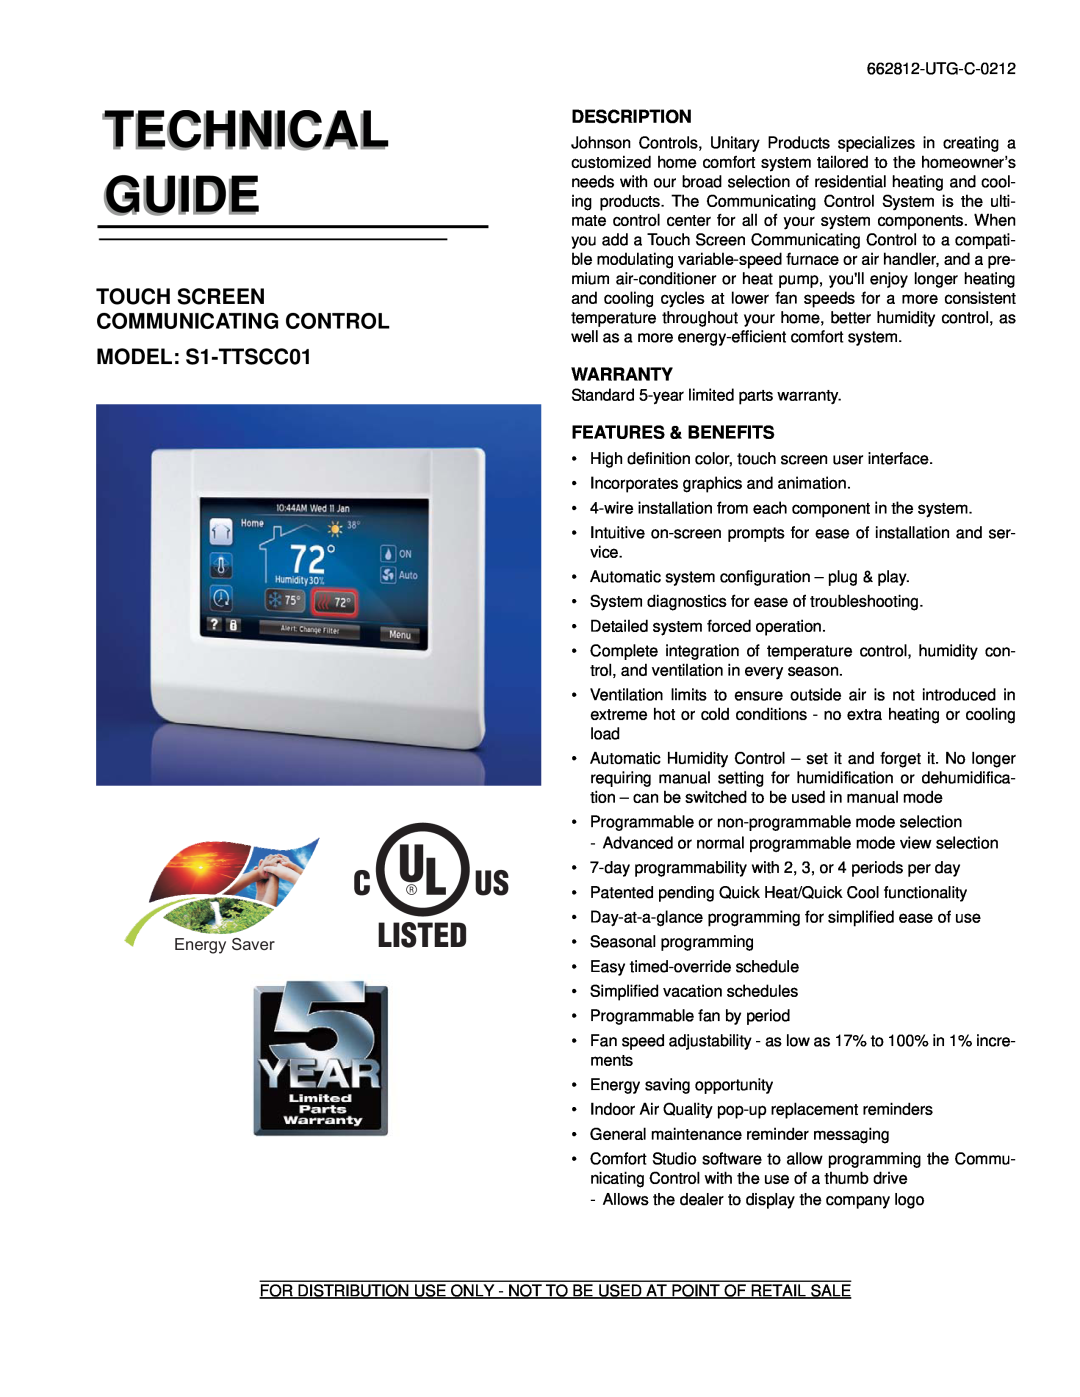 Johnson Controls S1-TTSCC01 warranty Energy Saver, Description, Warranty, Features & Benefits, Technical Guide 